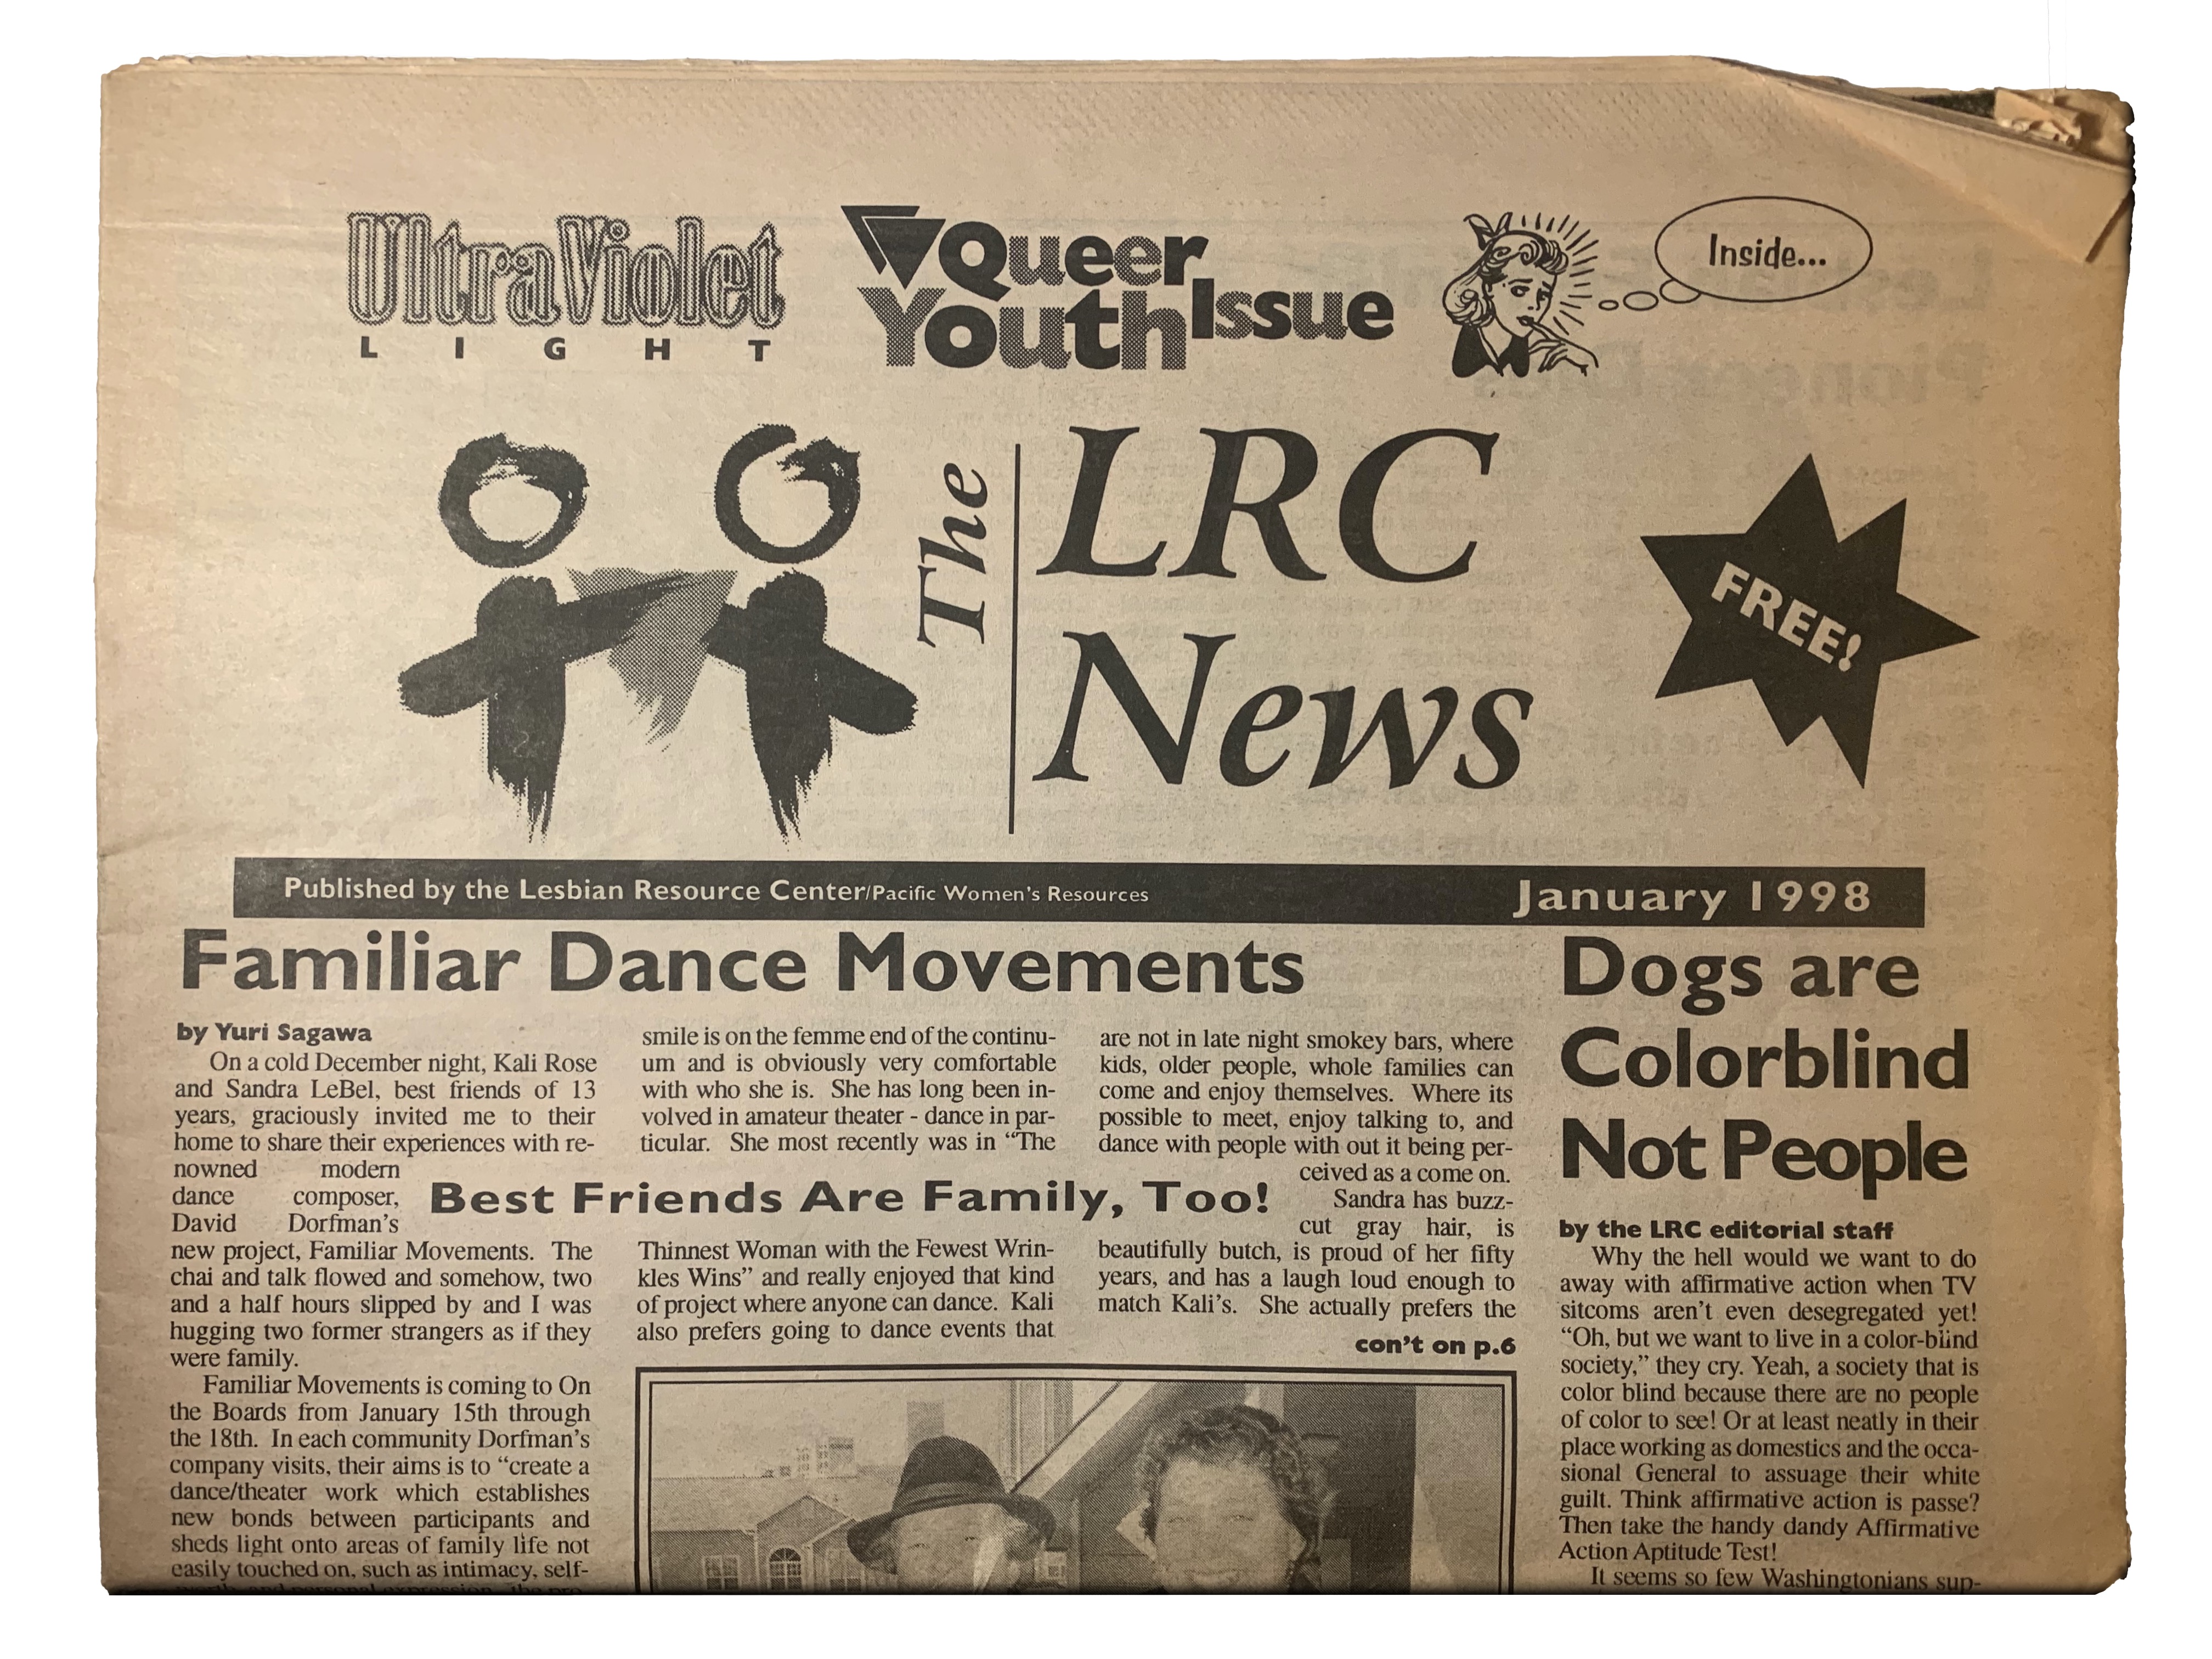 LRC News